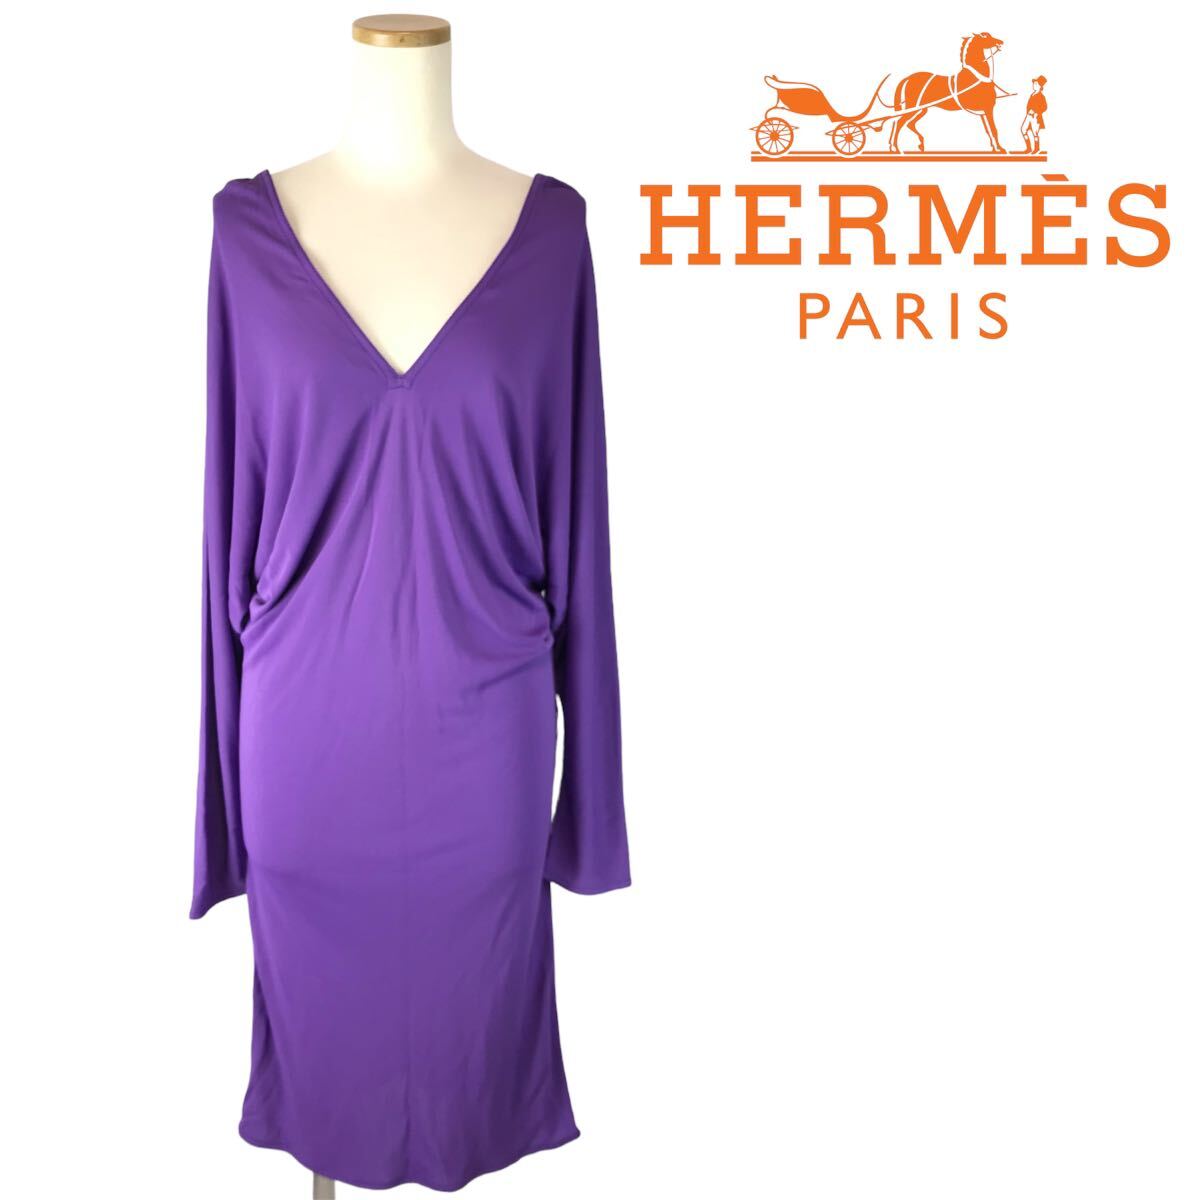 j182 未使用 タグ付 HERMES エルメス ワンピース Vネック タイトワンピース ドレス パープル 紫 38 フランス製 ナイロン100% 正規品の画像1